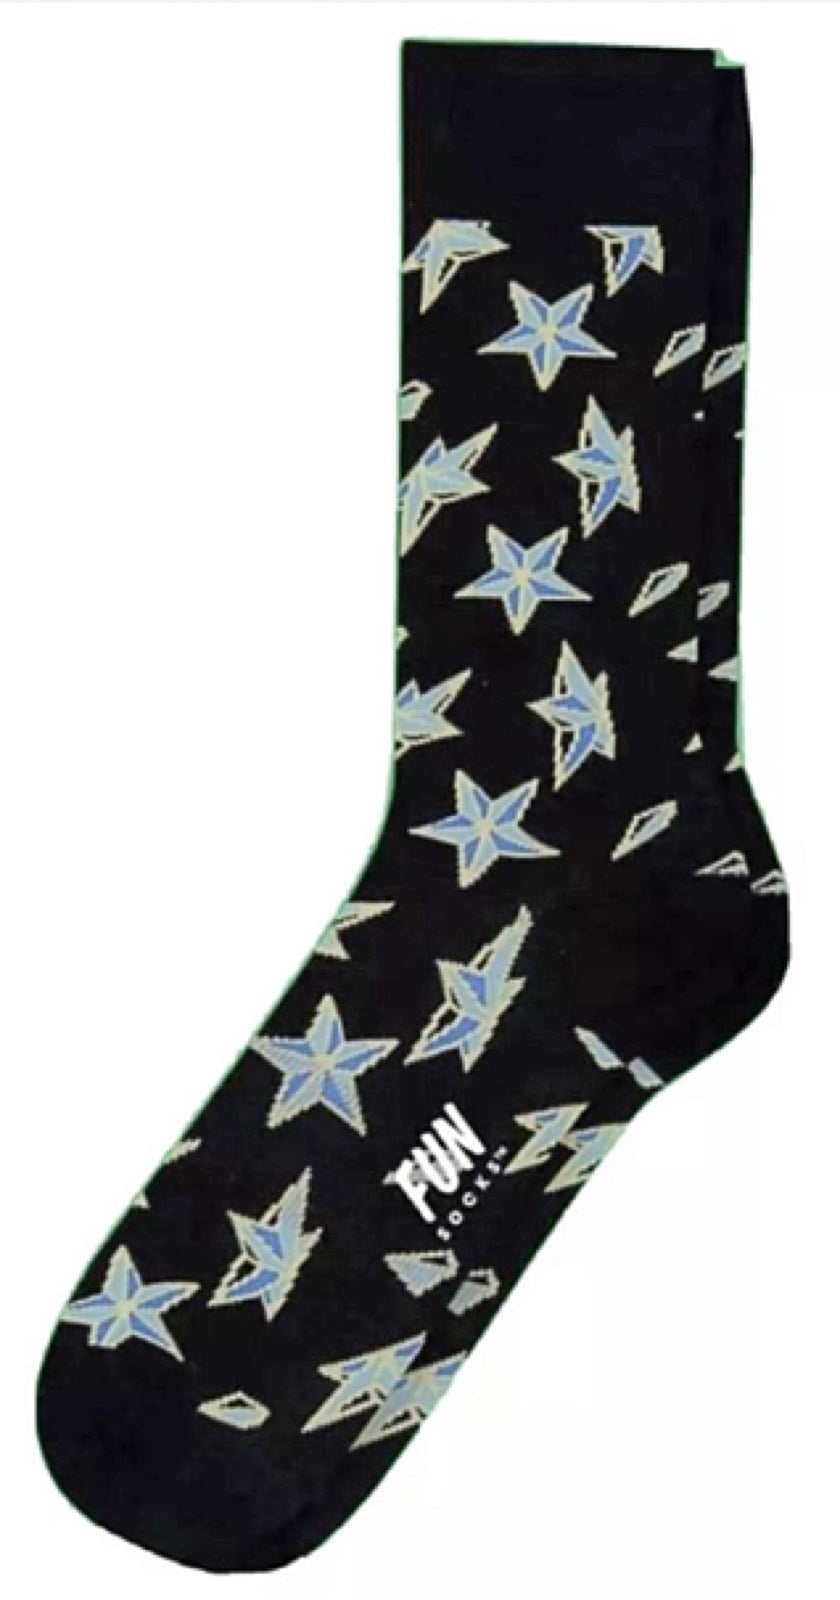 FUN SOCKS Brand Men's SHINING STARS Socks